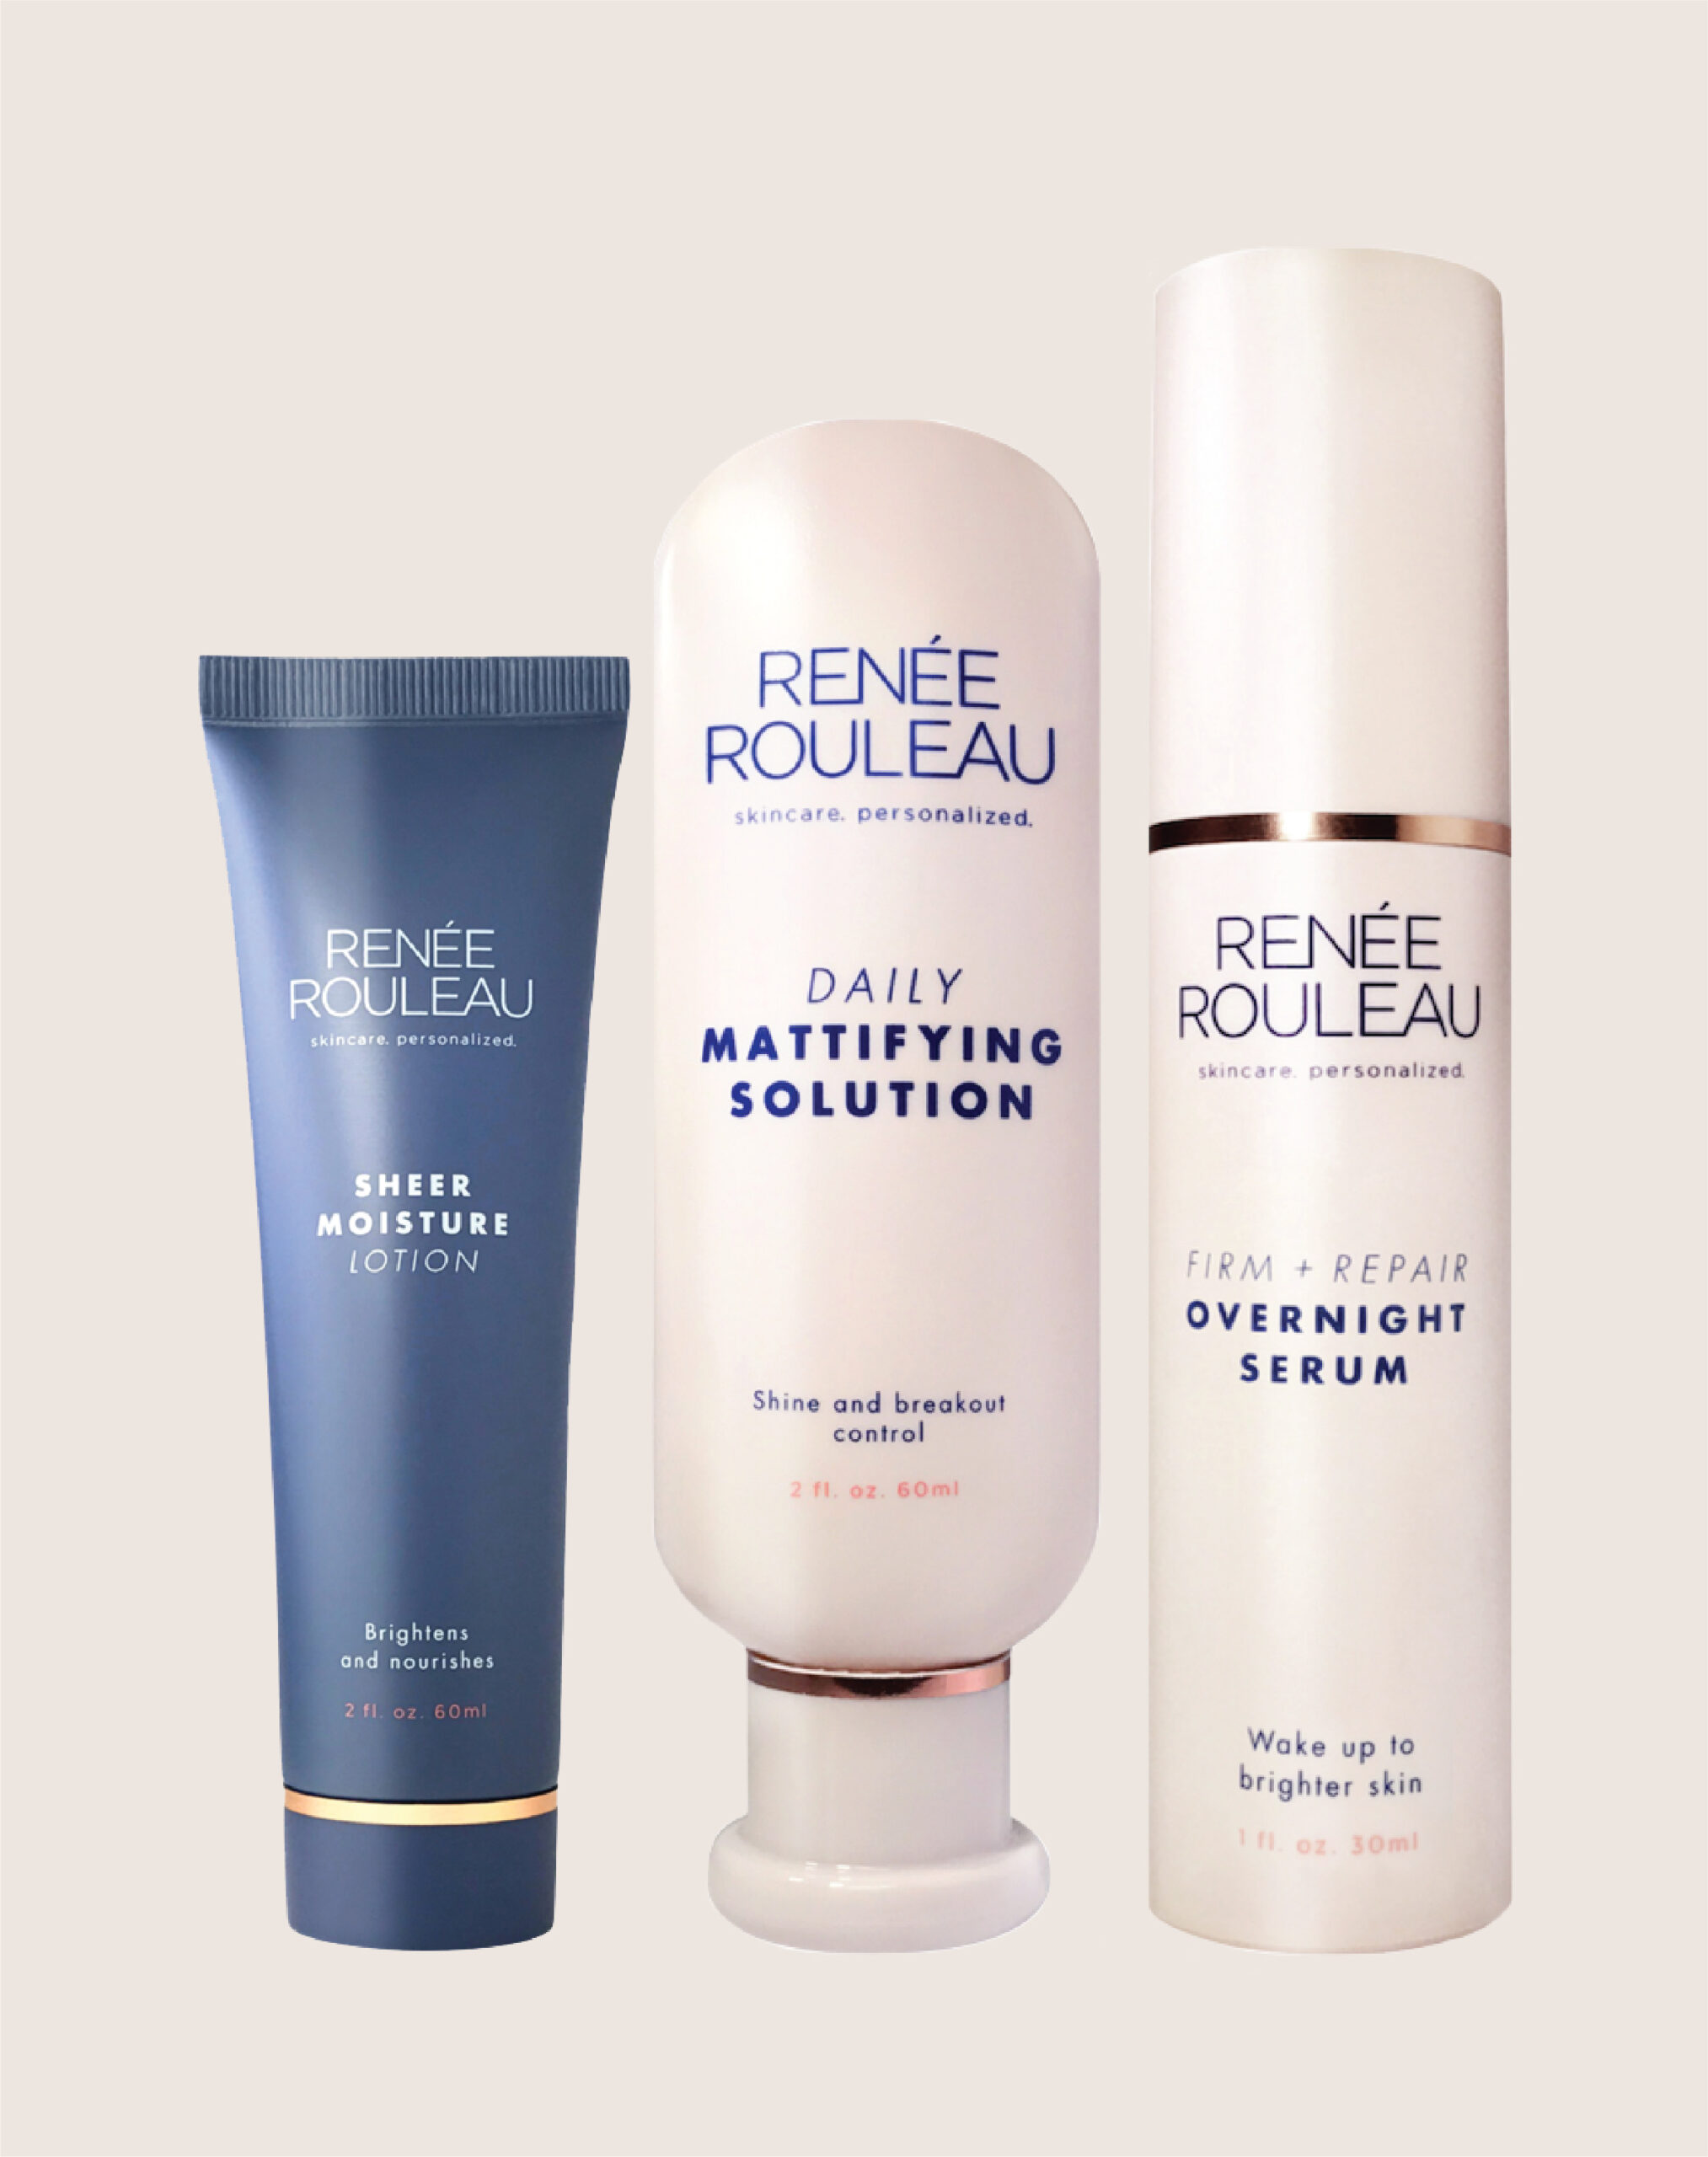 Renee Rouleau Packaging Examples